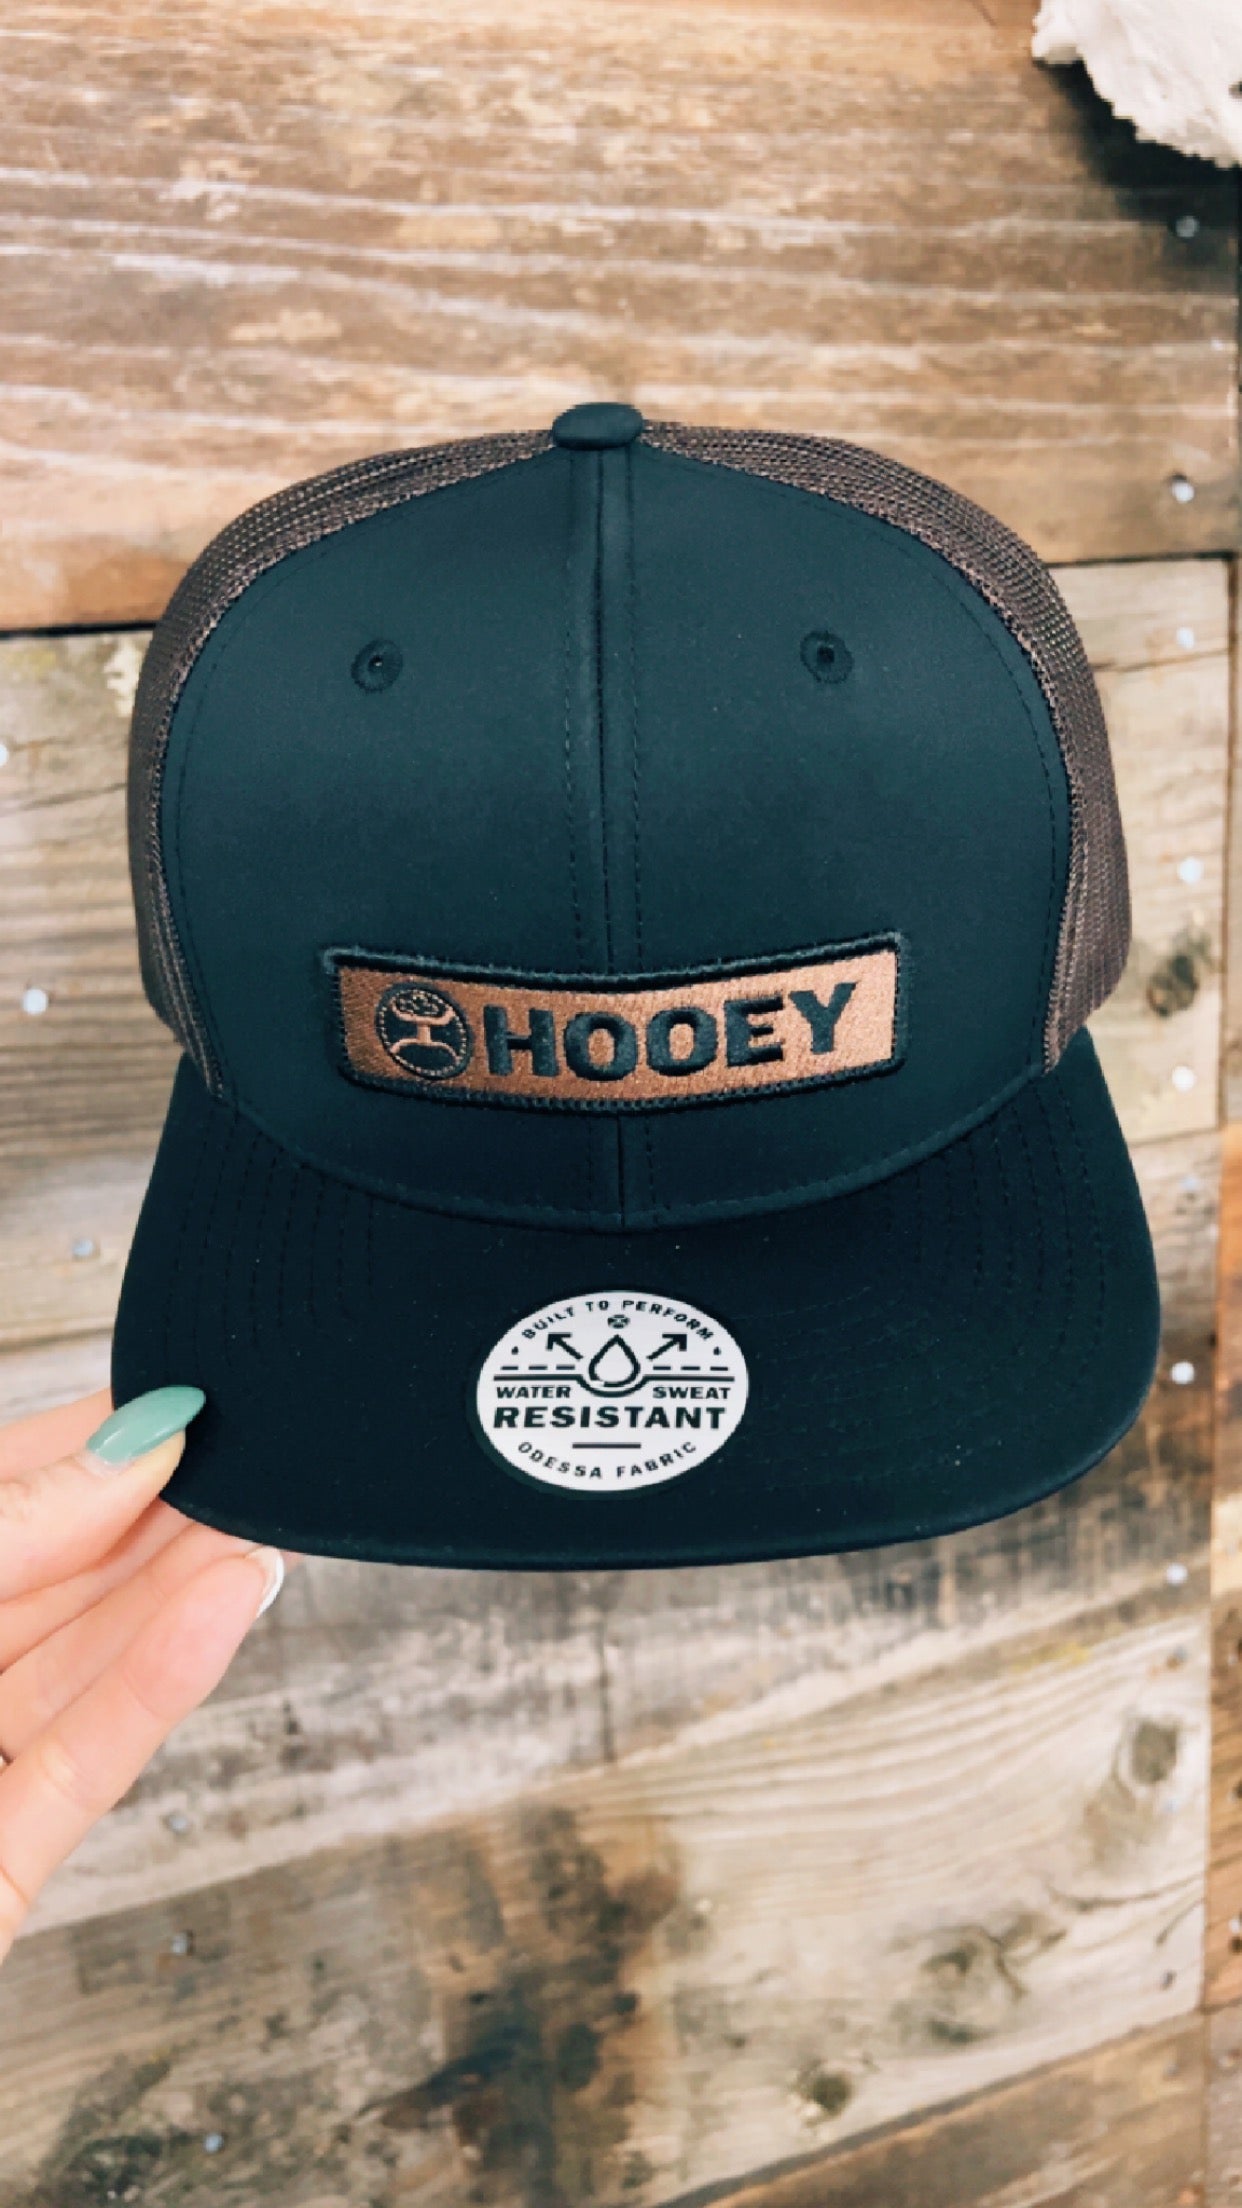 The Lockup Hooey Trucker Hat - Black & Brown